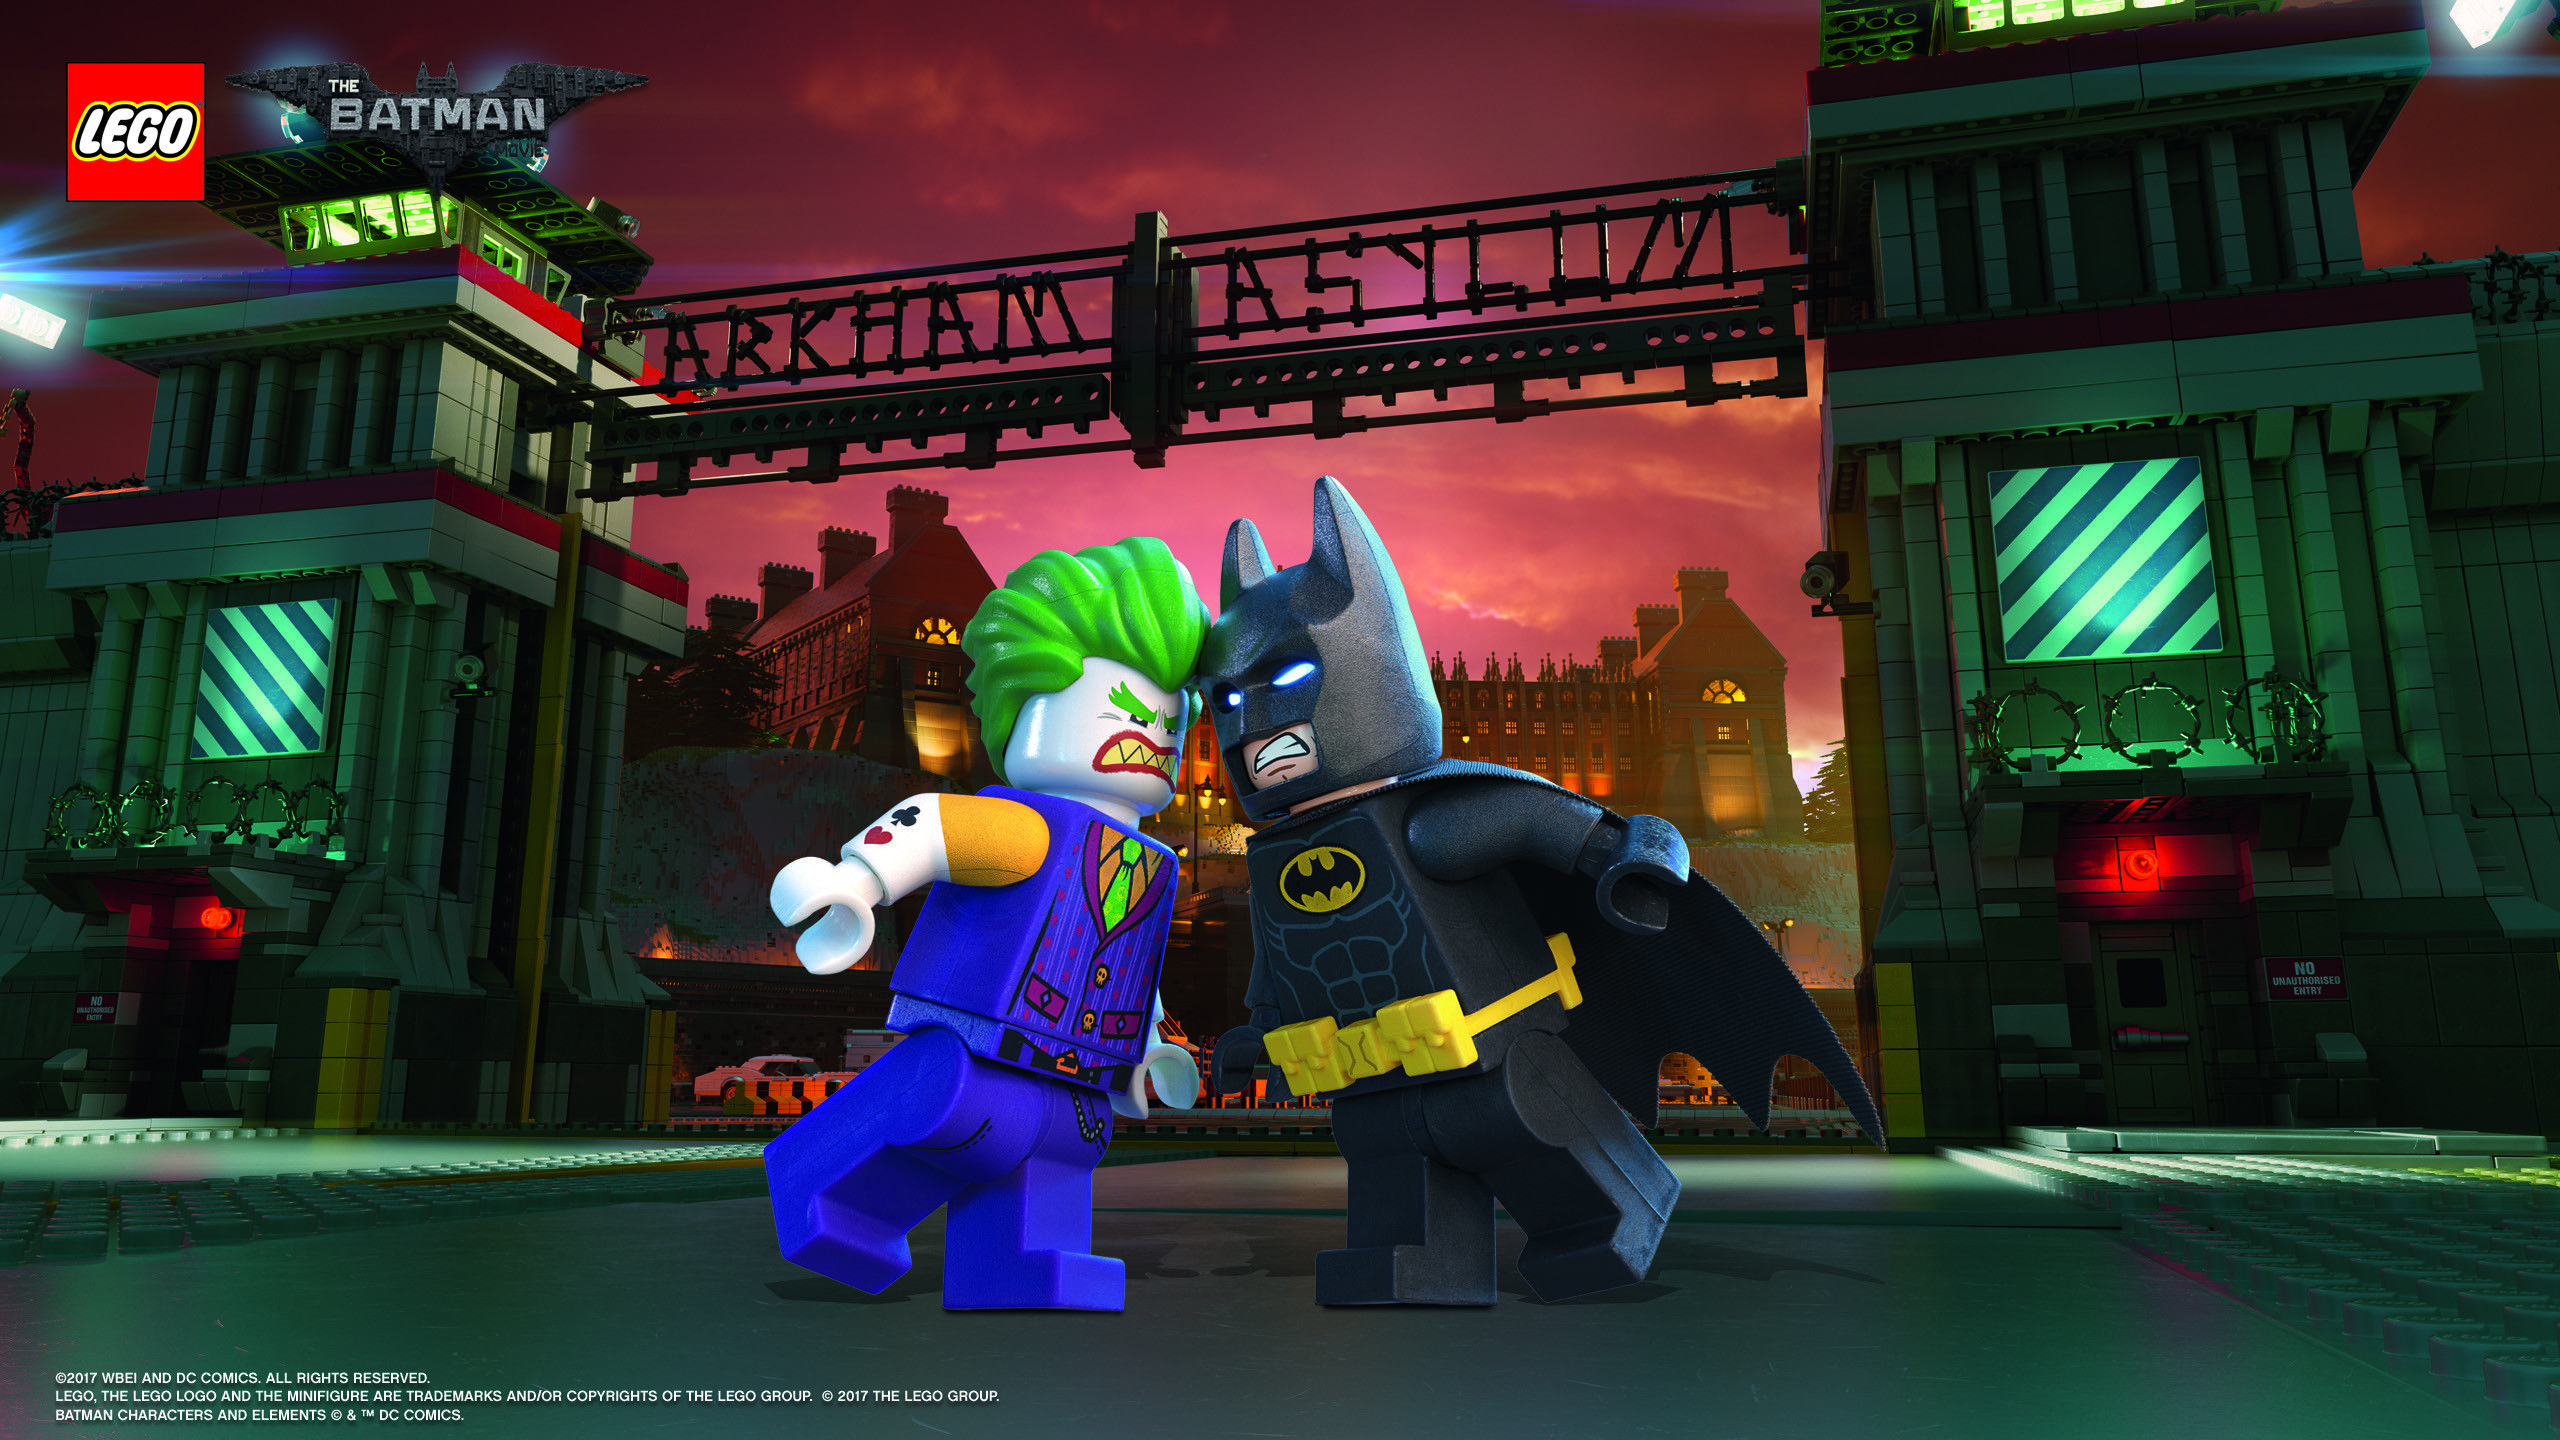 Res: 2560x The Jokerâ„¢ Wallpaper. Download landscape Â· Download portrait. Lego batman, Lego batman games, Batman